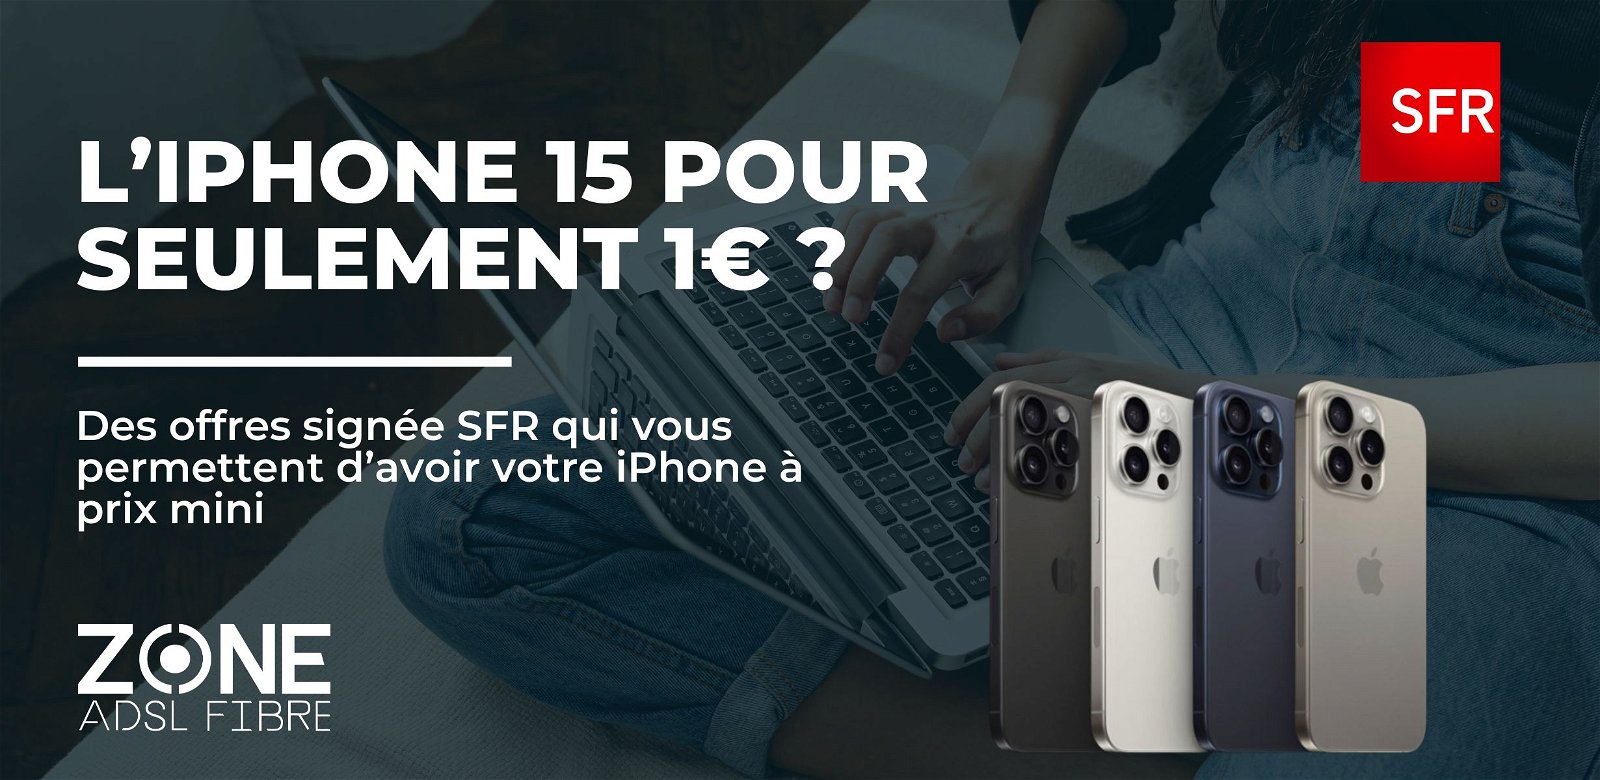 iPhone pas cher : oui cet iPhone apparaît bien à 1€ avec SFR !